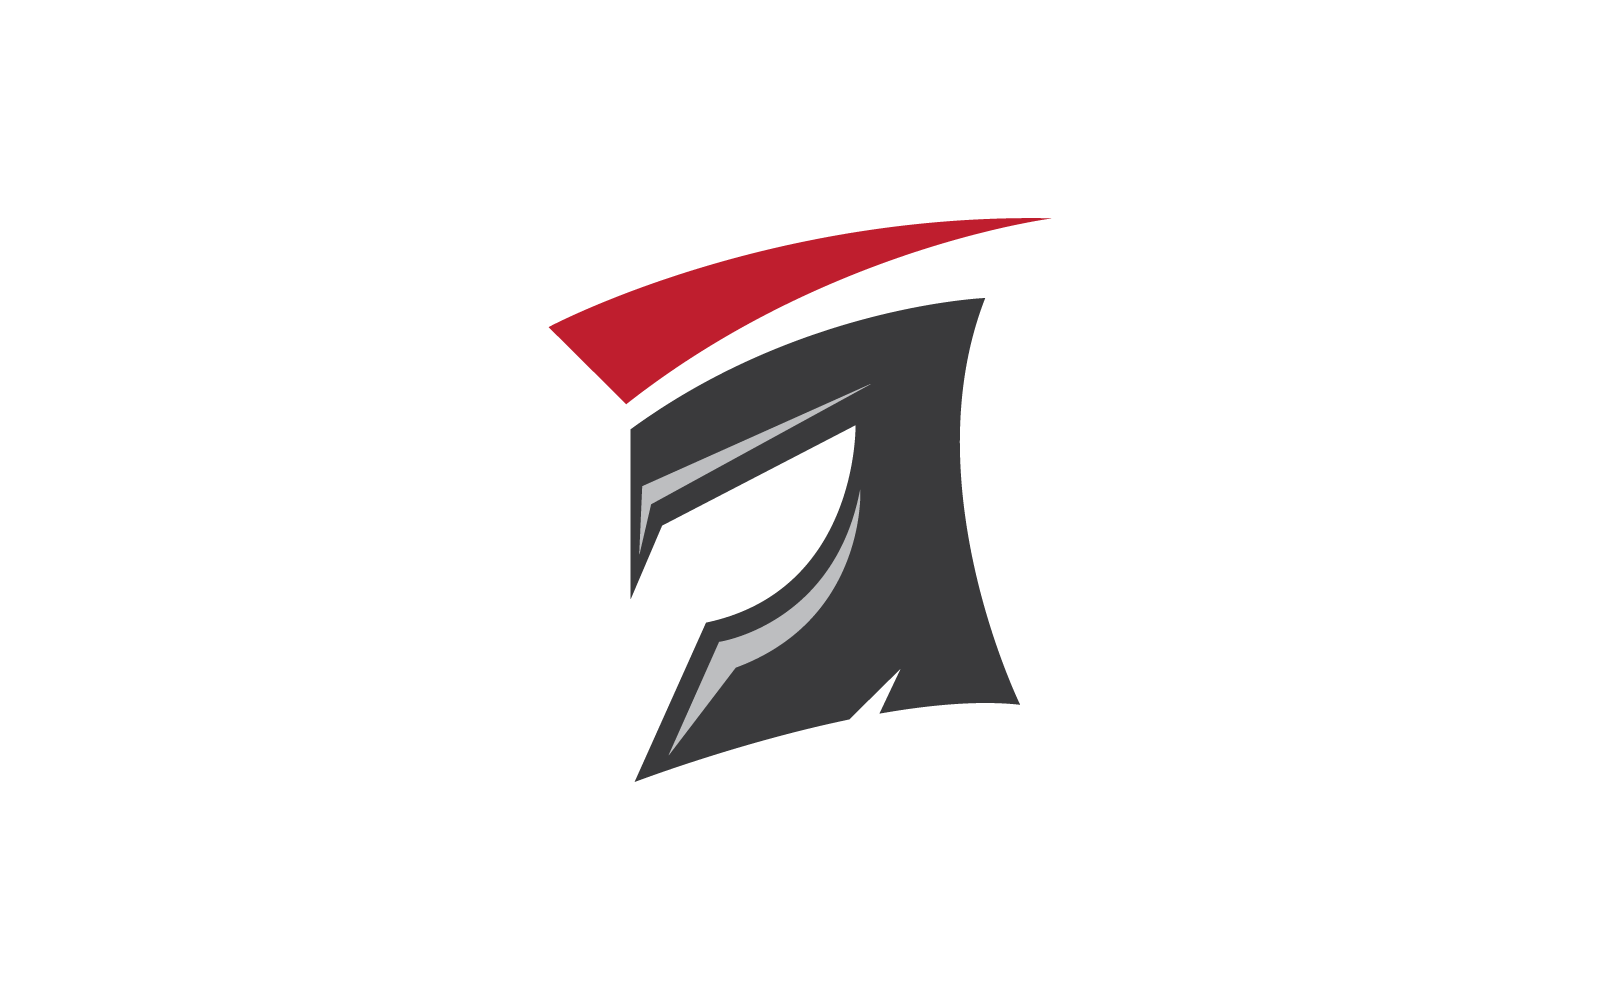 Spartan gladiator logo vector design template